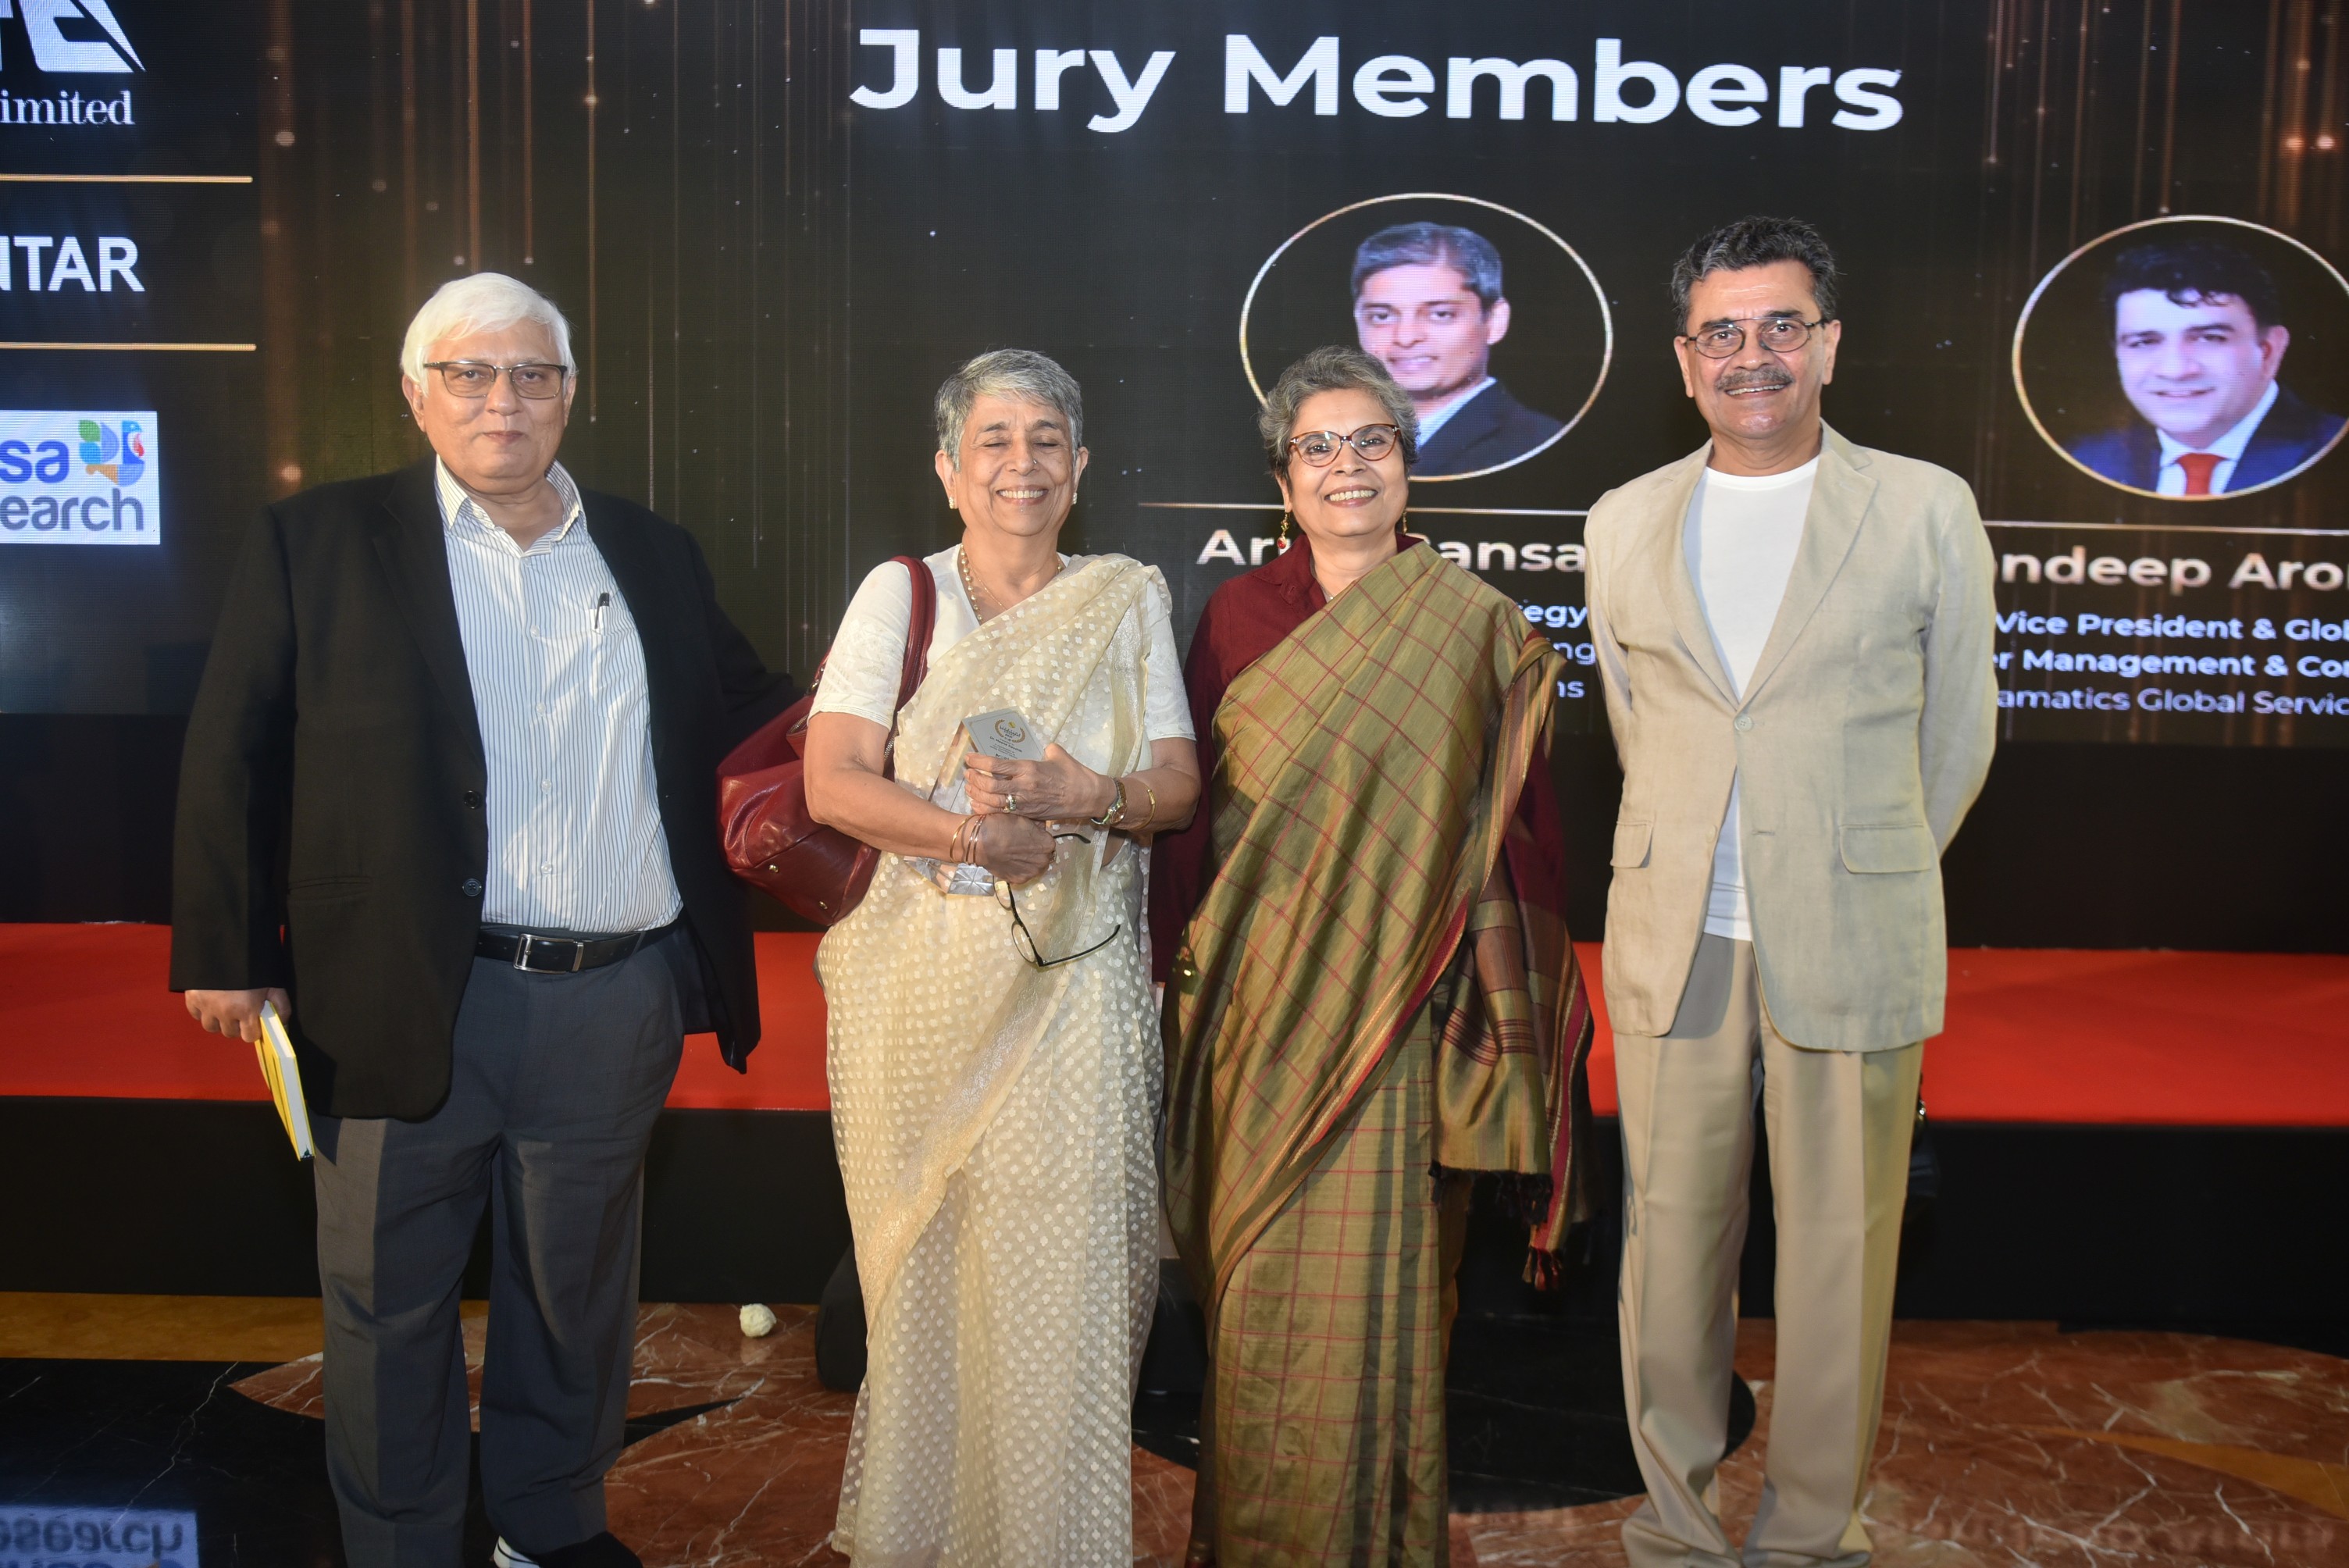 Golden Key Awards 2021, Mumbai, March 2022